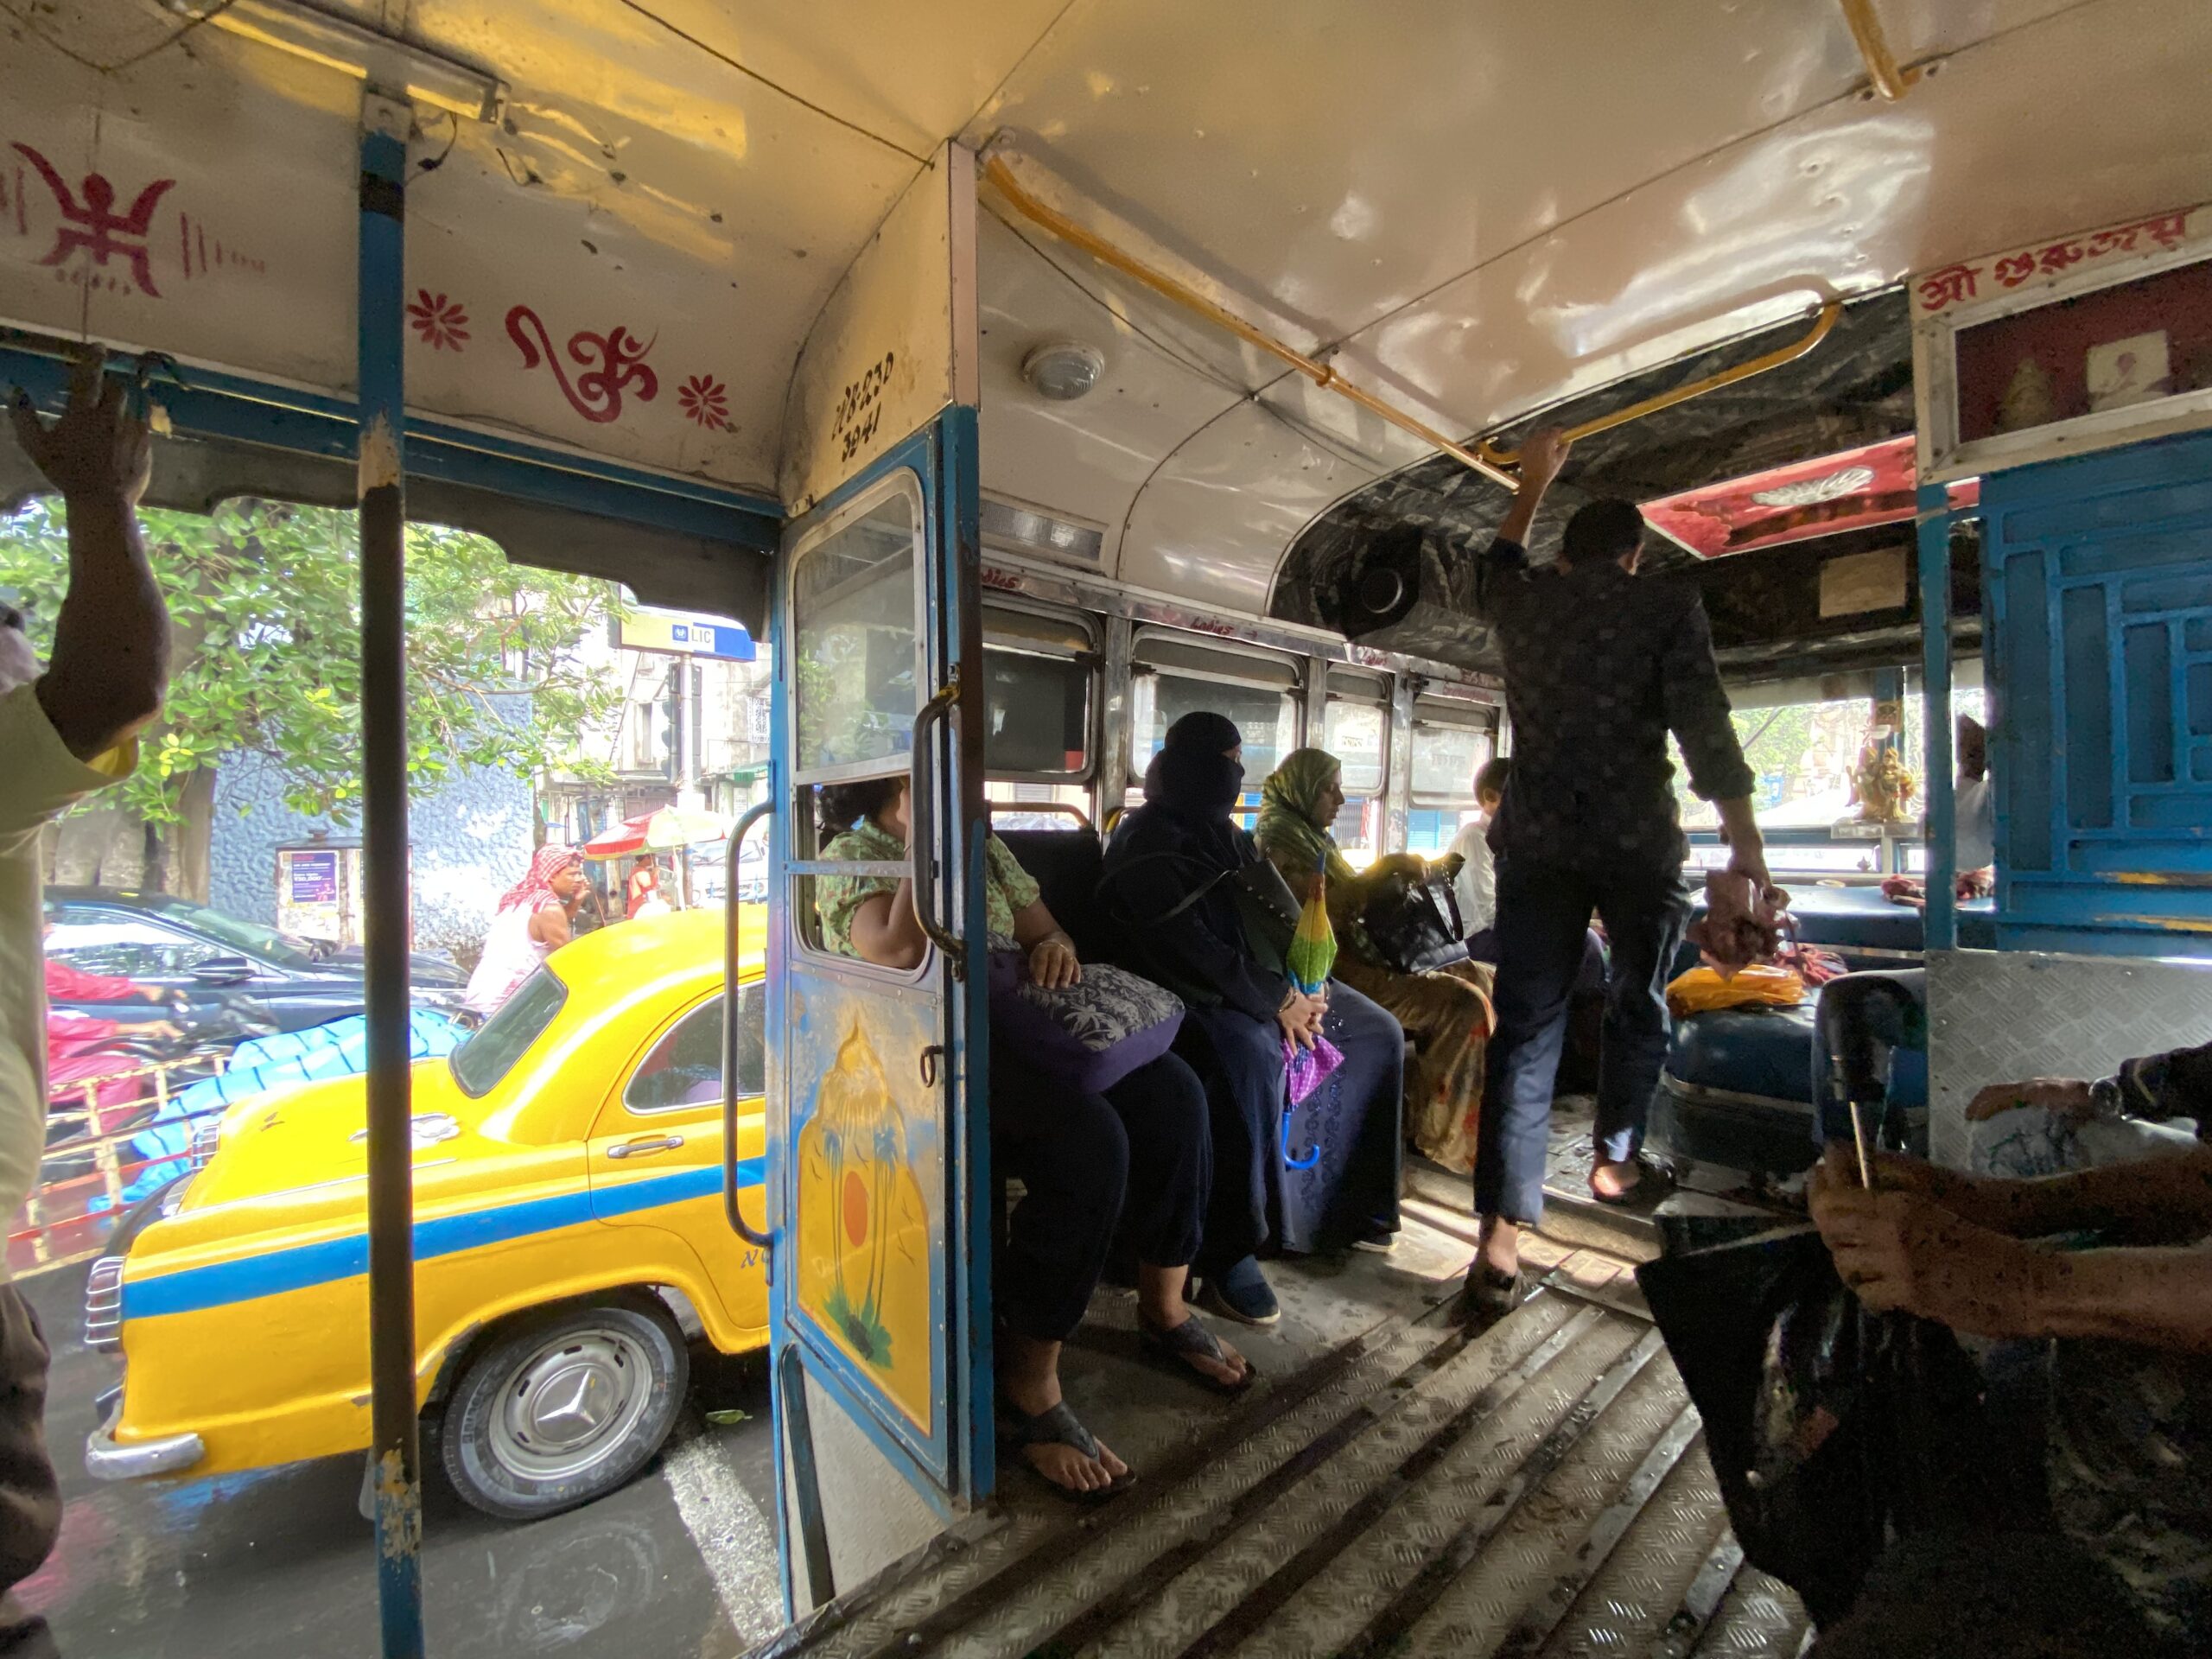 インドのバスは乗務員に声をかければバス停でなくてもどこでも乗り降りできる。